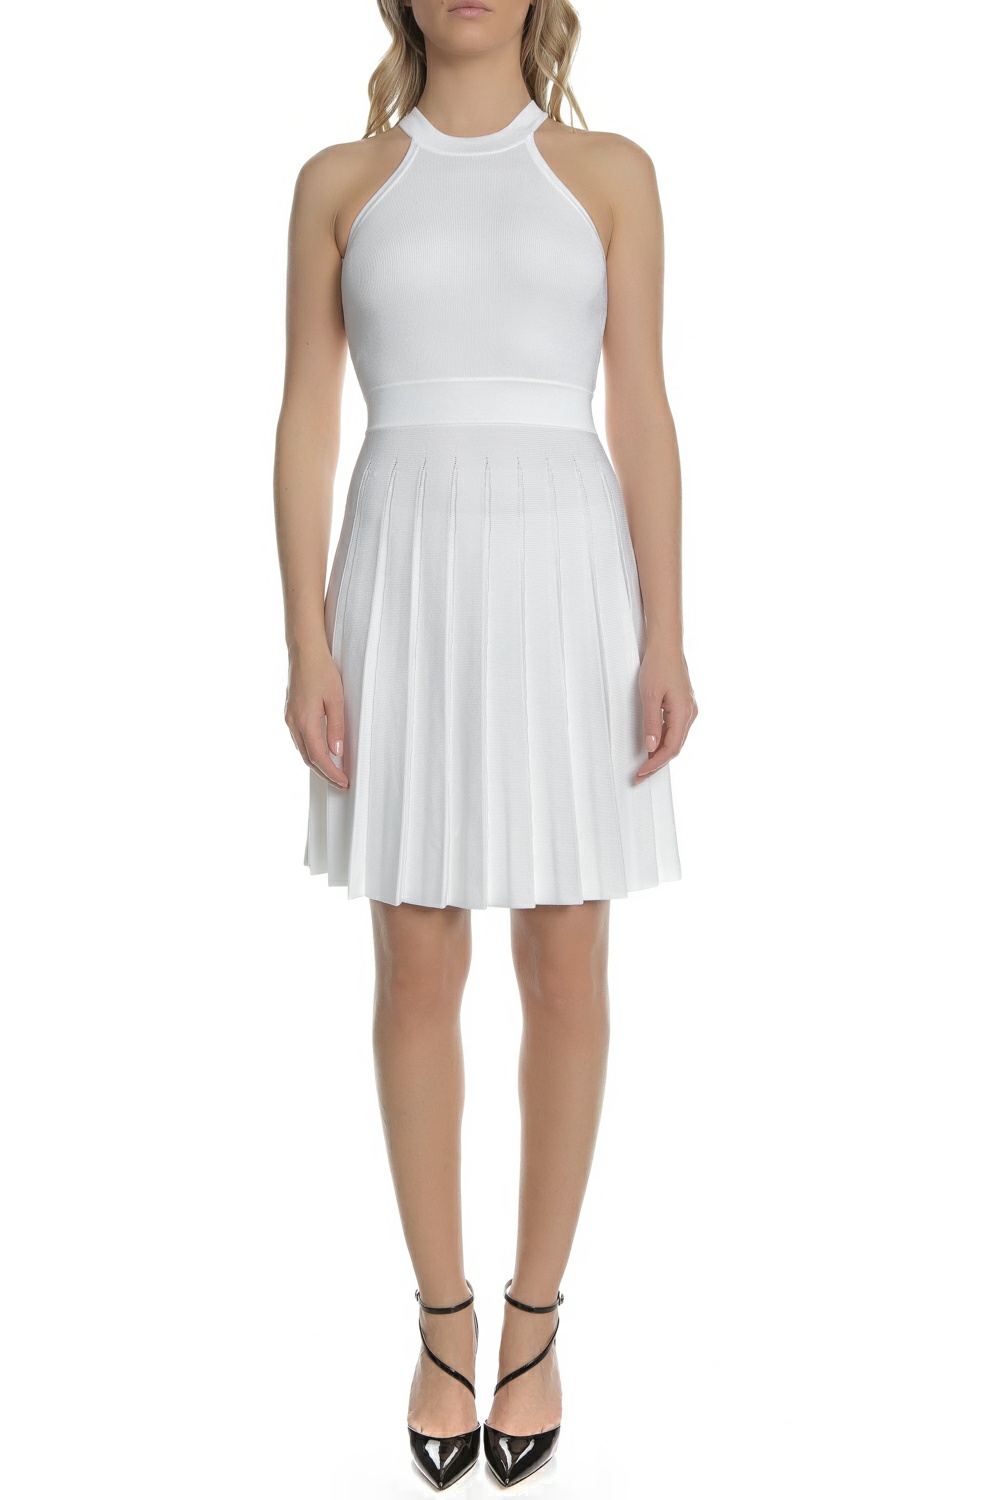 Γυναικεία/Ρούχα/Φορέματα/Μίνι GUESS - Γυναικείο μίνι φόρεμα AISHA GUESS λευκό